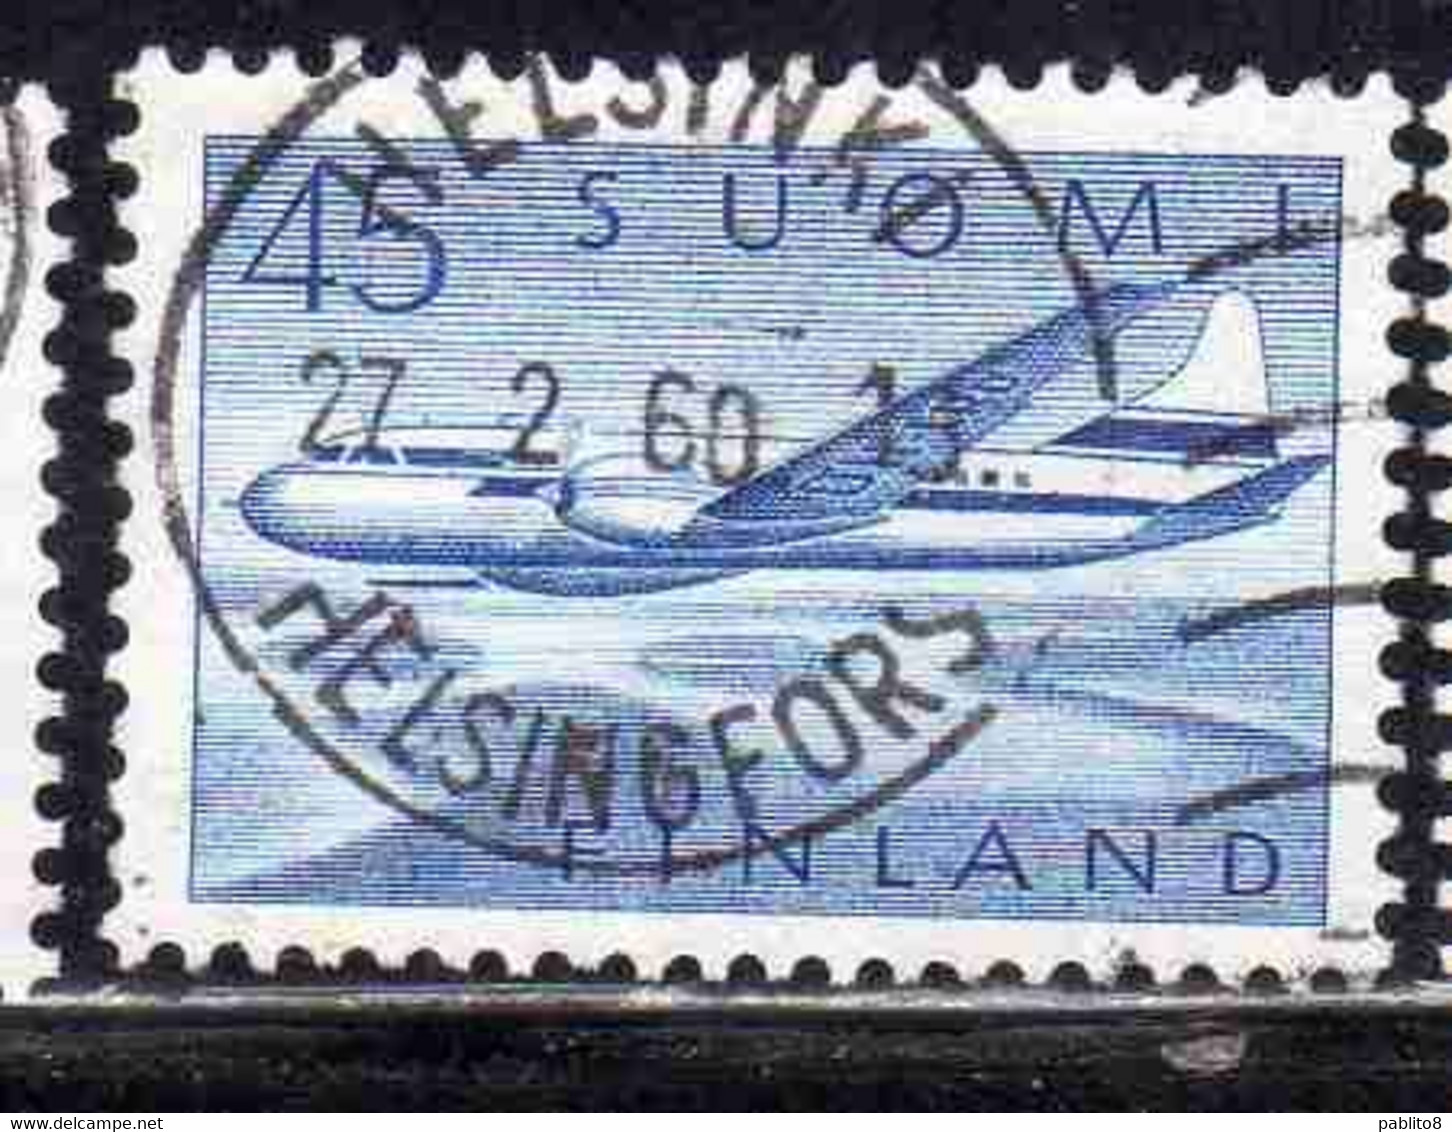 SUOMI FINLAND FINLANDIA FINLANDE 1958 AIR POST MAIL AIRMAIL CONVAIR OVER LAKES 34m USED USATO OBLITERE' - Usati